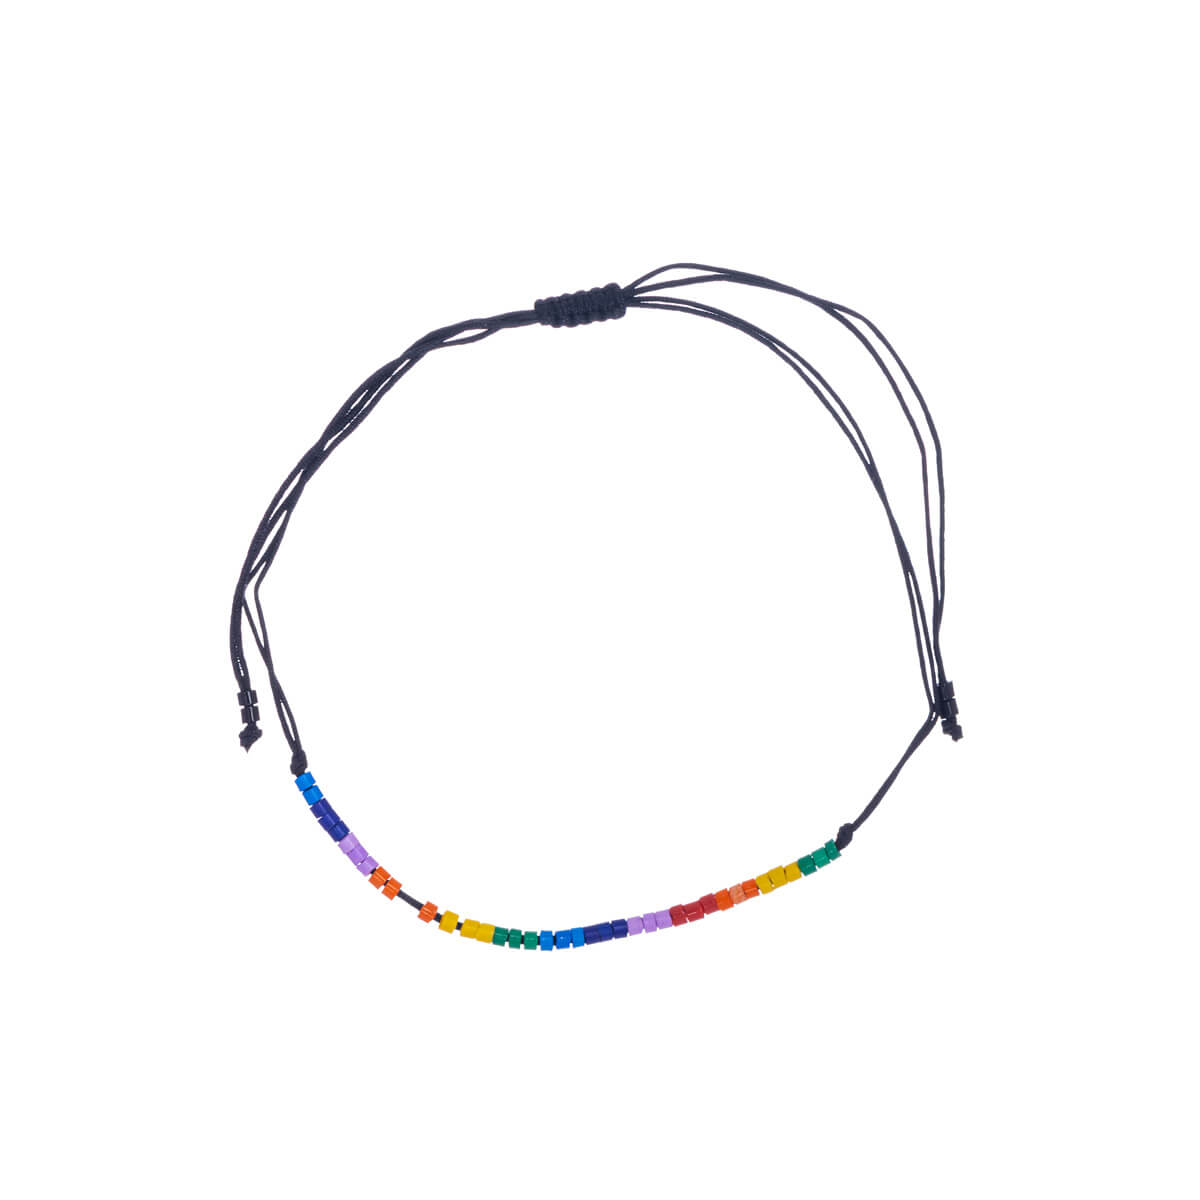 Adjustable rainbow bracelet